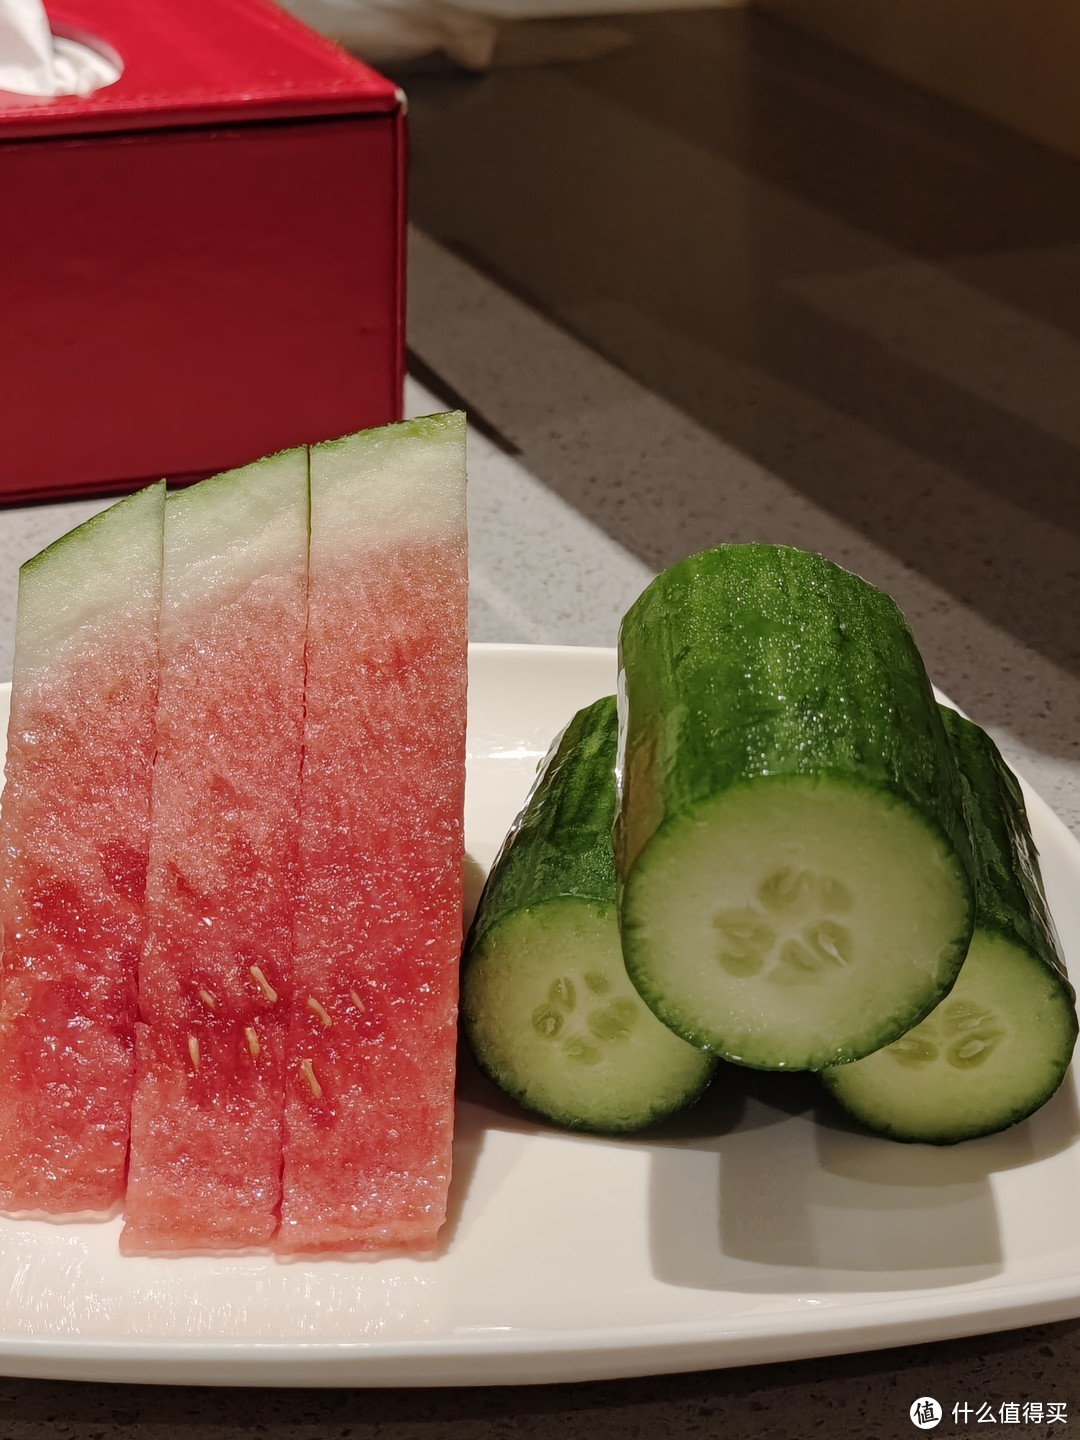 夏天吃点健康好吃的瓜果蔬菜不是挺好的吗